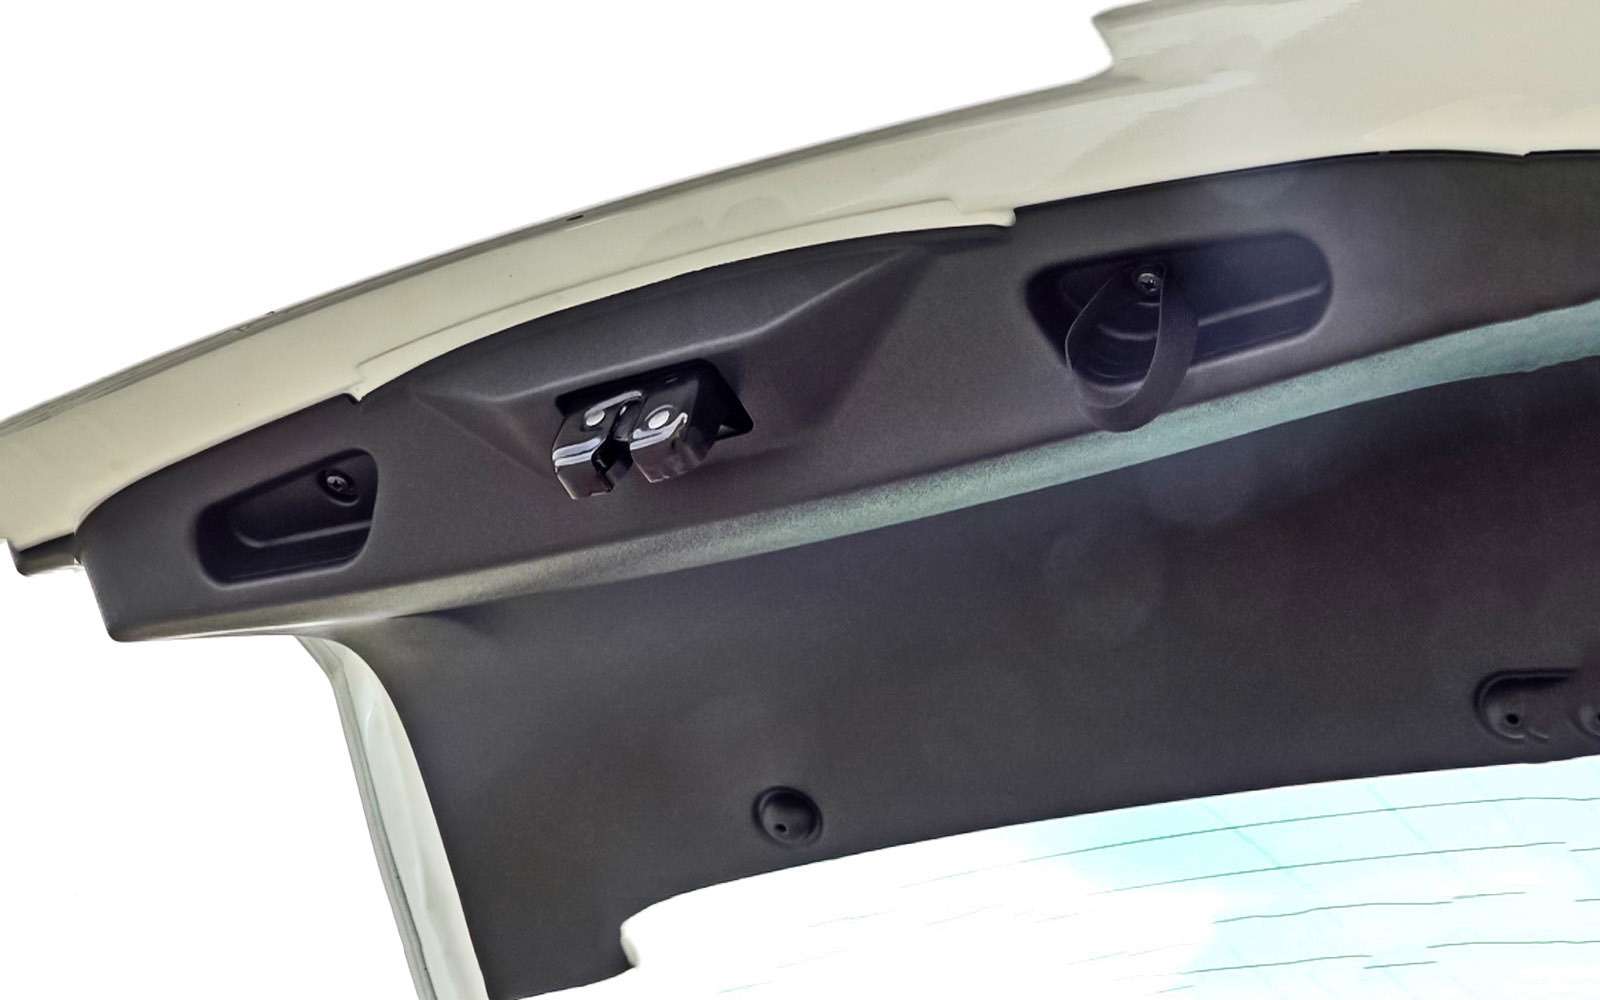 Матерчатая петелька на двери багажника Гранты – жест заботы о покупателях. Прежде ее не было.